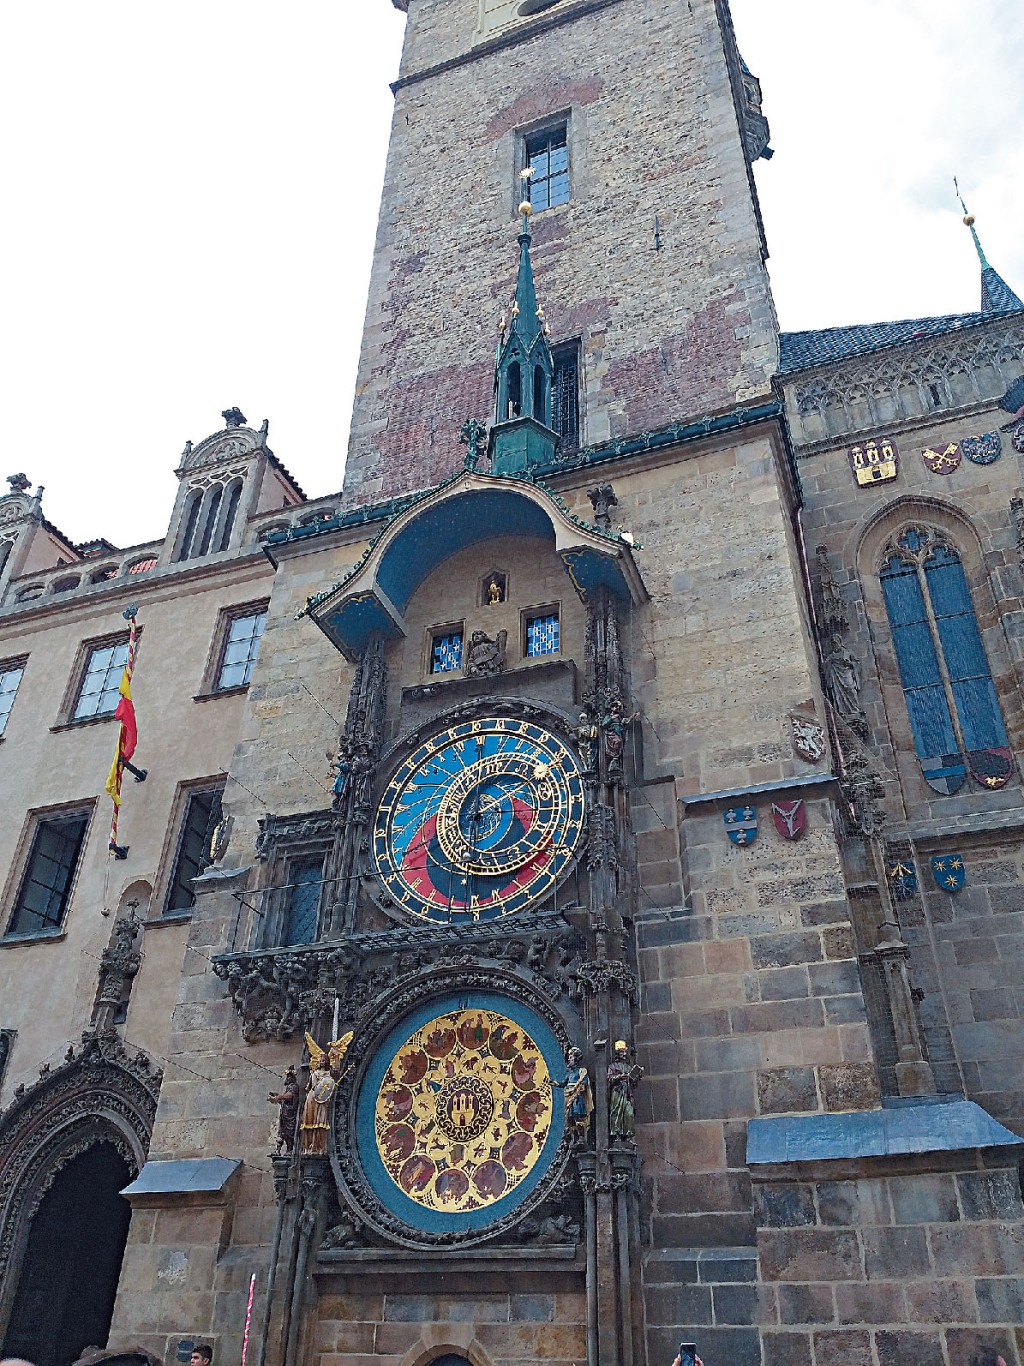 坐落于布拉格老城广场的天文钟建于中世纪的1410年，距今超过600年，每逢整点报时。